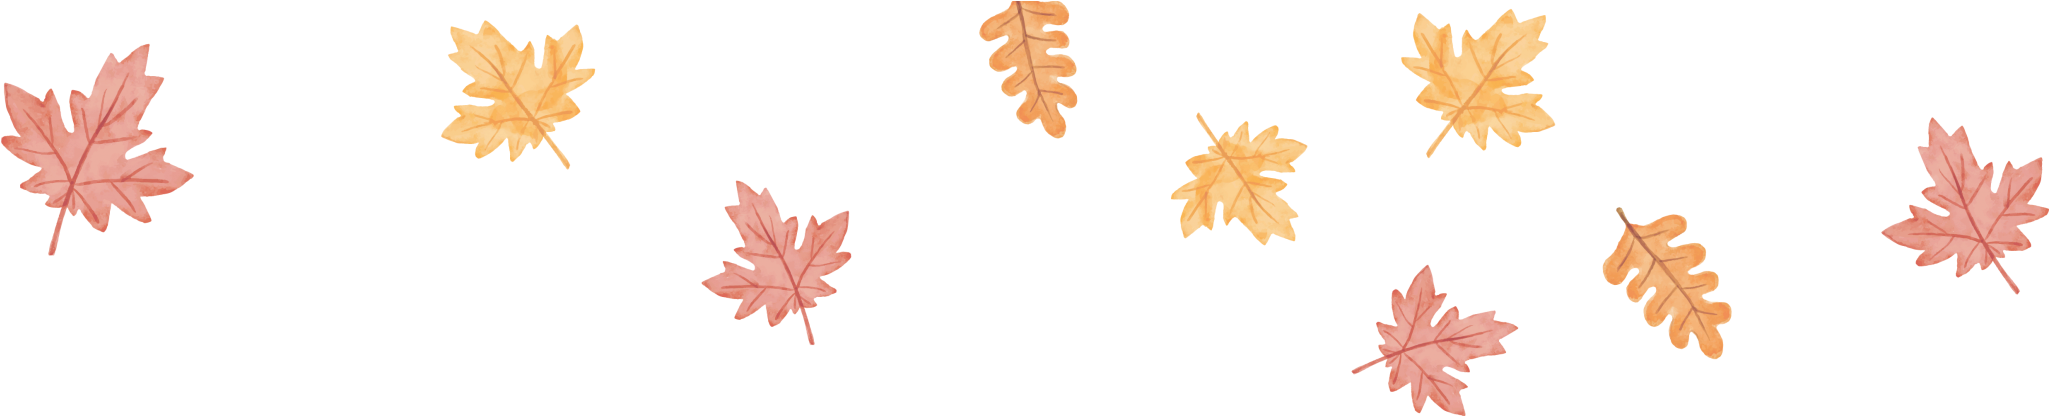 Orange Leaves-01 - Maple Leaf (2048x444), Png Download